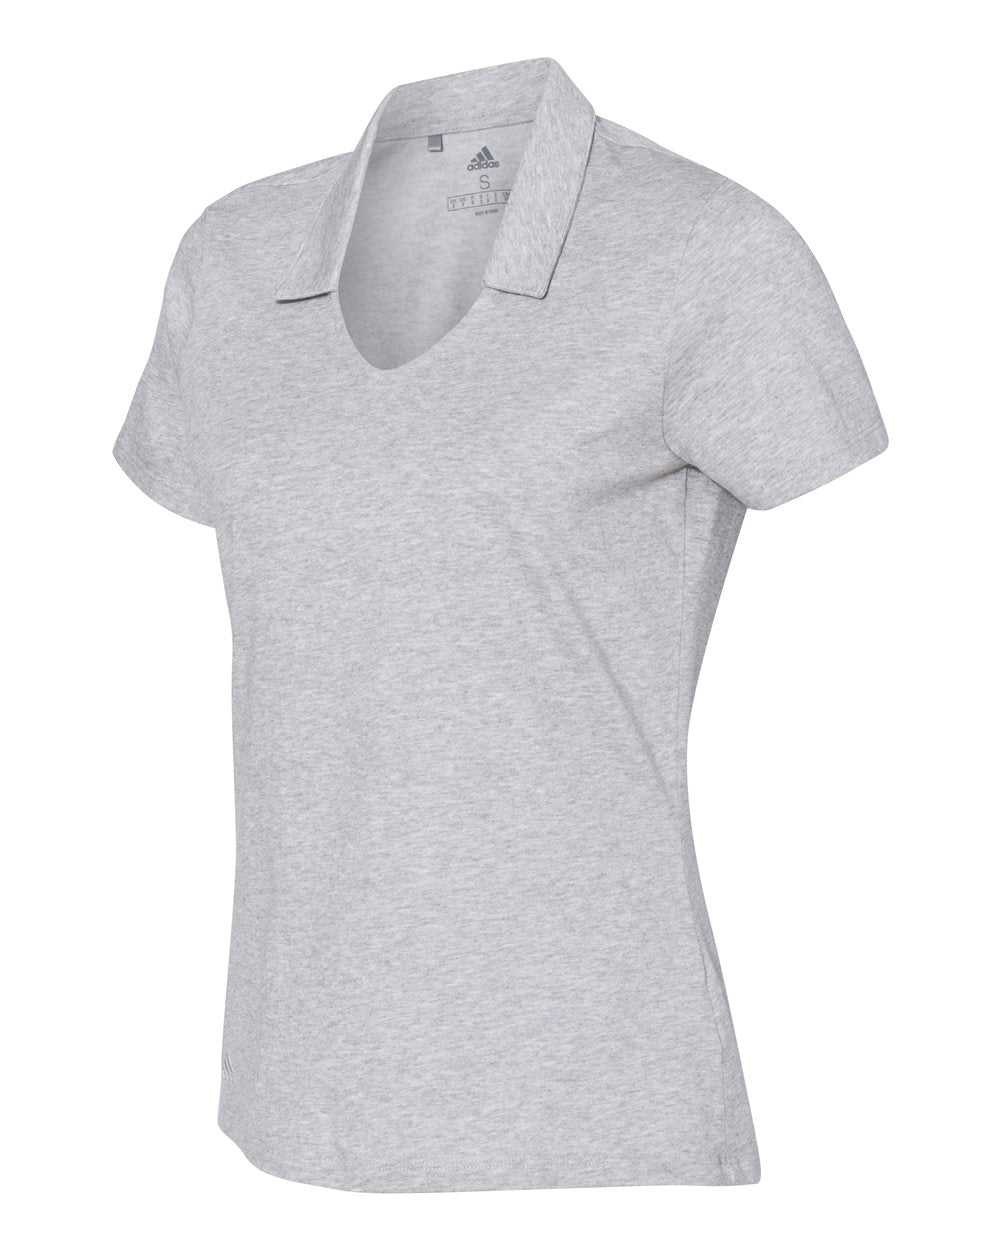 Adidas A323 Women&#39;s Cotton Blend Sport Shirt - Medium Grey Heather - HIT a Double